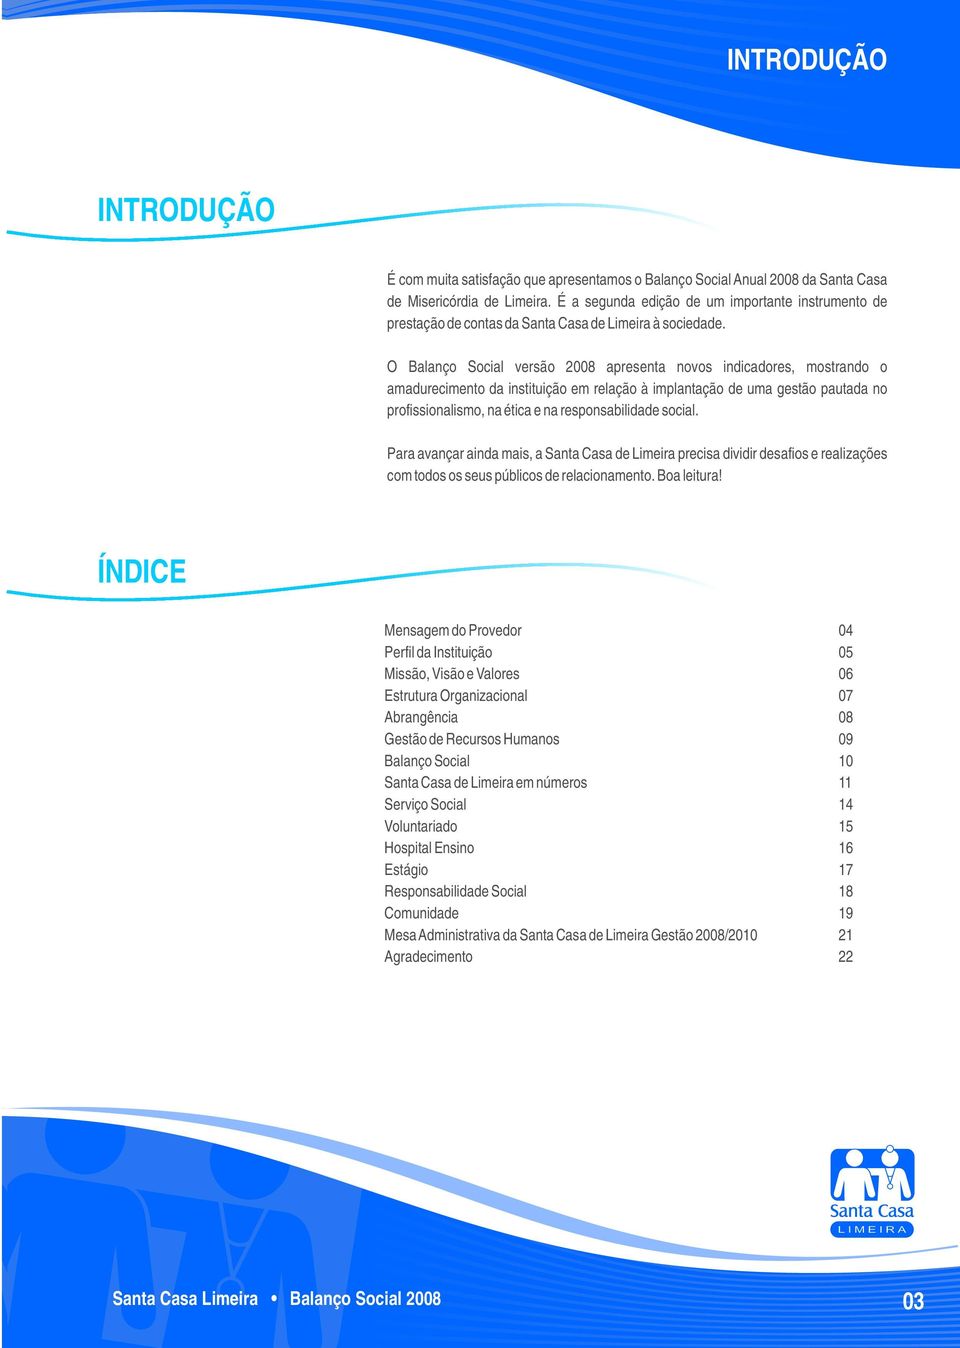 O Balanço Social versão 2008 apresenta novos indicadores, mostrando o amadurecimento da instituição em relação à implantação de uma gestão pautada no profissionalismo, na ética e na responsabilidade